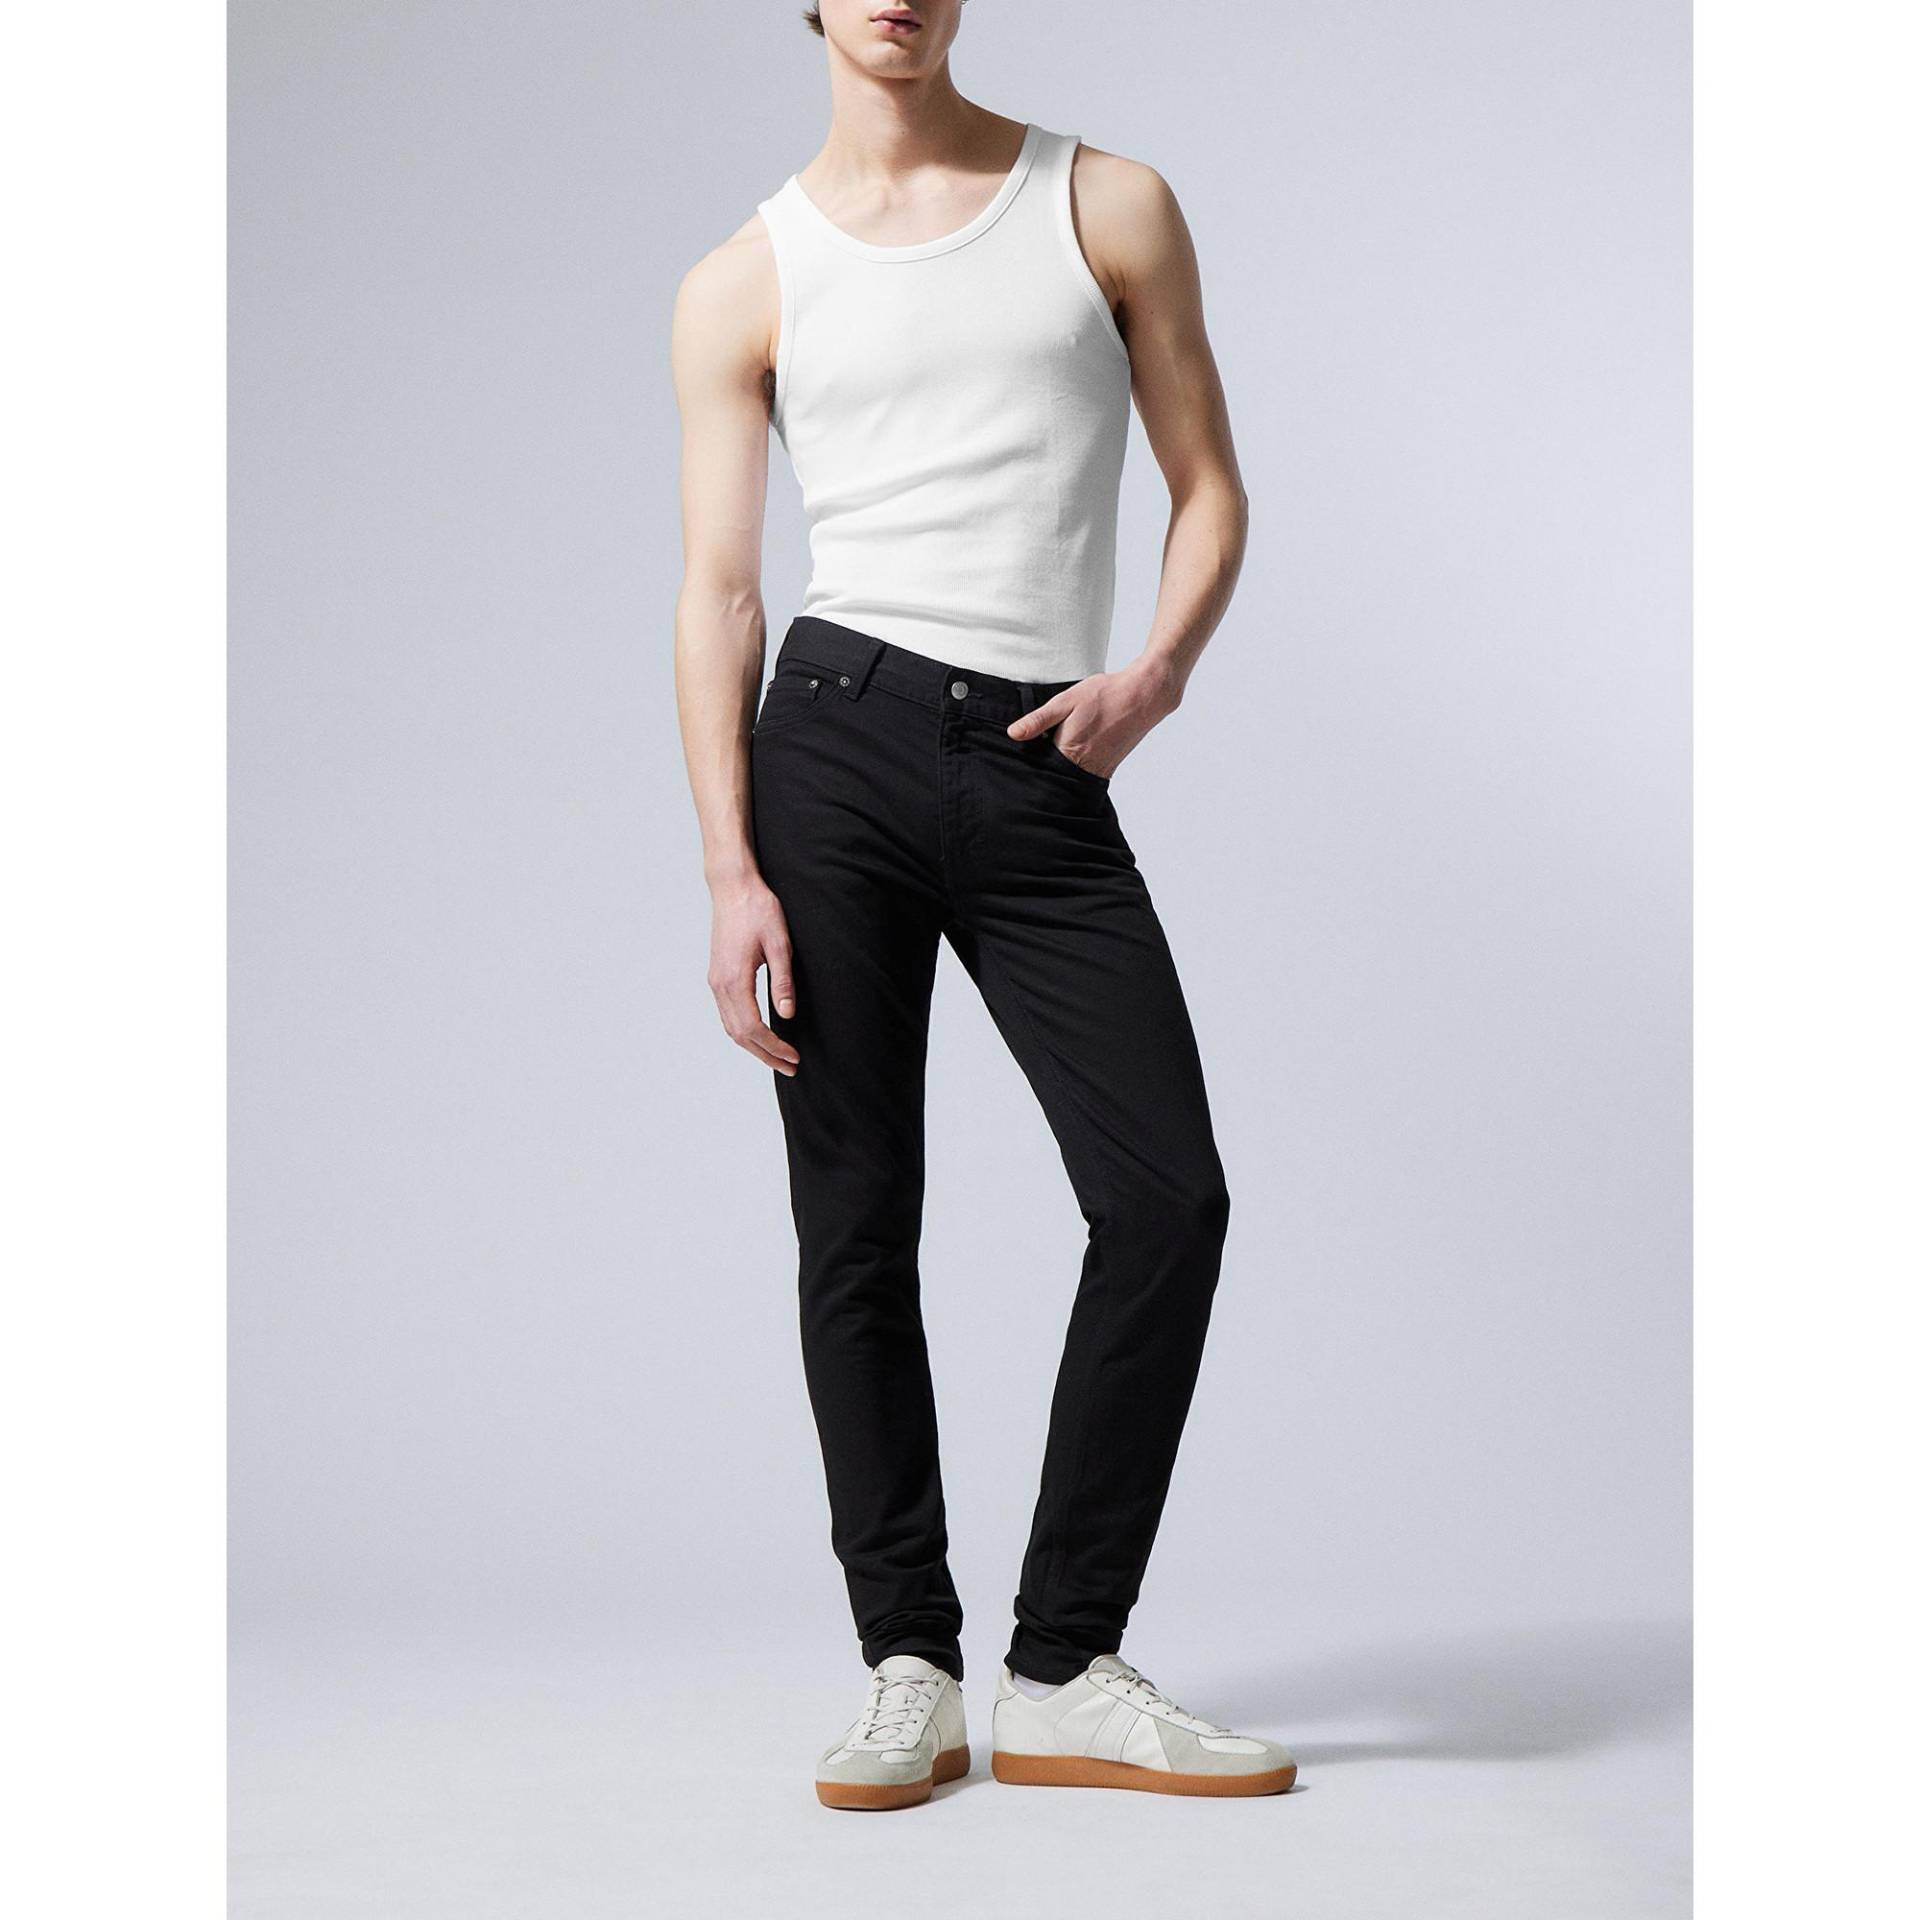 Jeans, Skinny Fit Herren Black L32/W34 von WEEKDAY